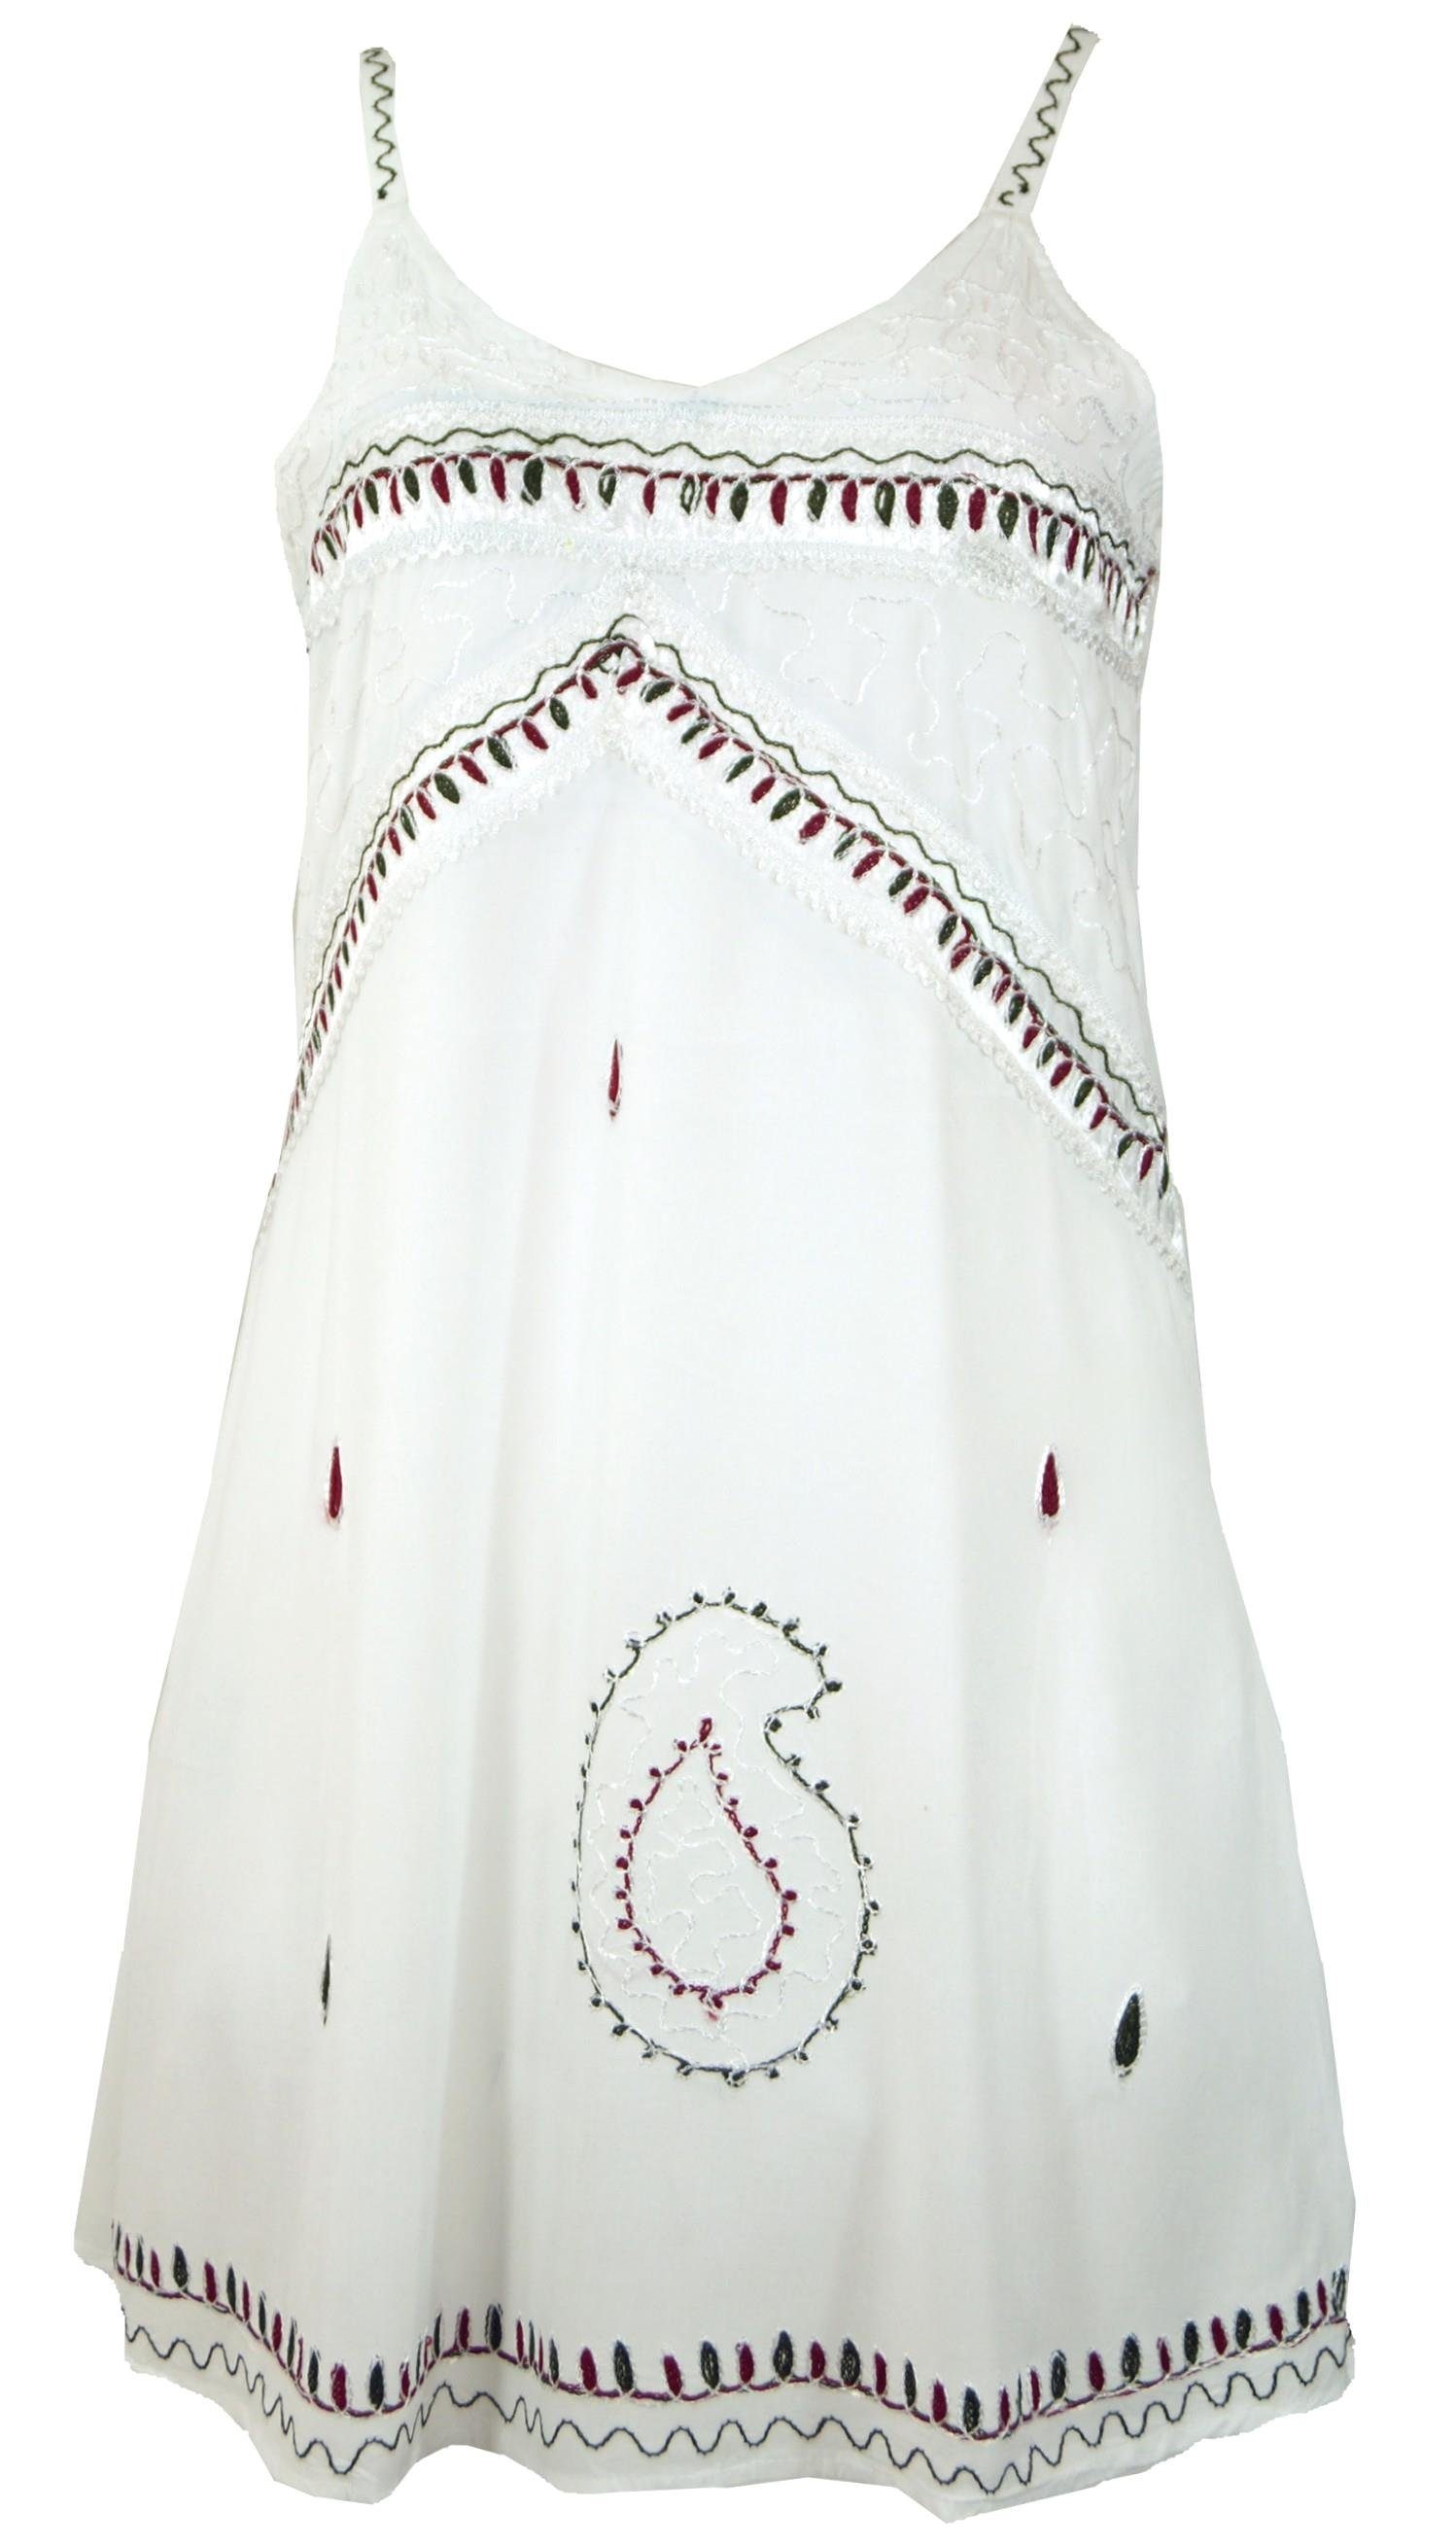 Midikleid Besticktes indisches Design Bekleidung weiß alternative Kleid, Guru-Shop Minikleid -.. Boho 1